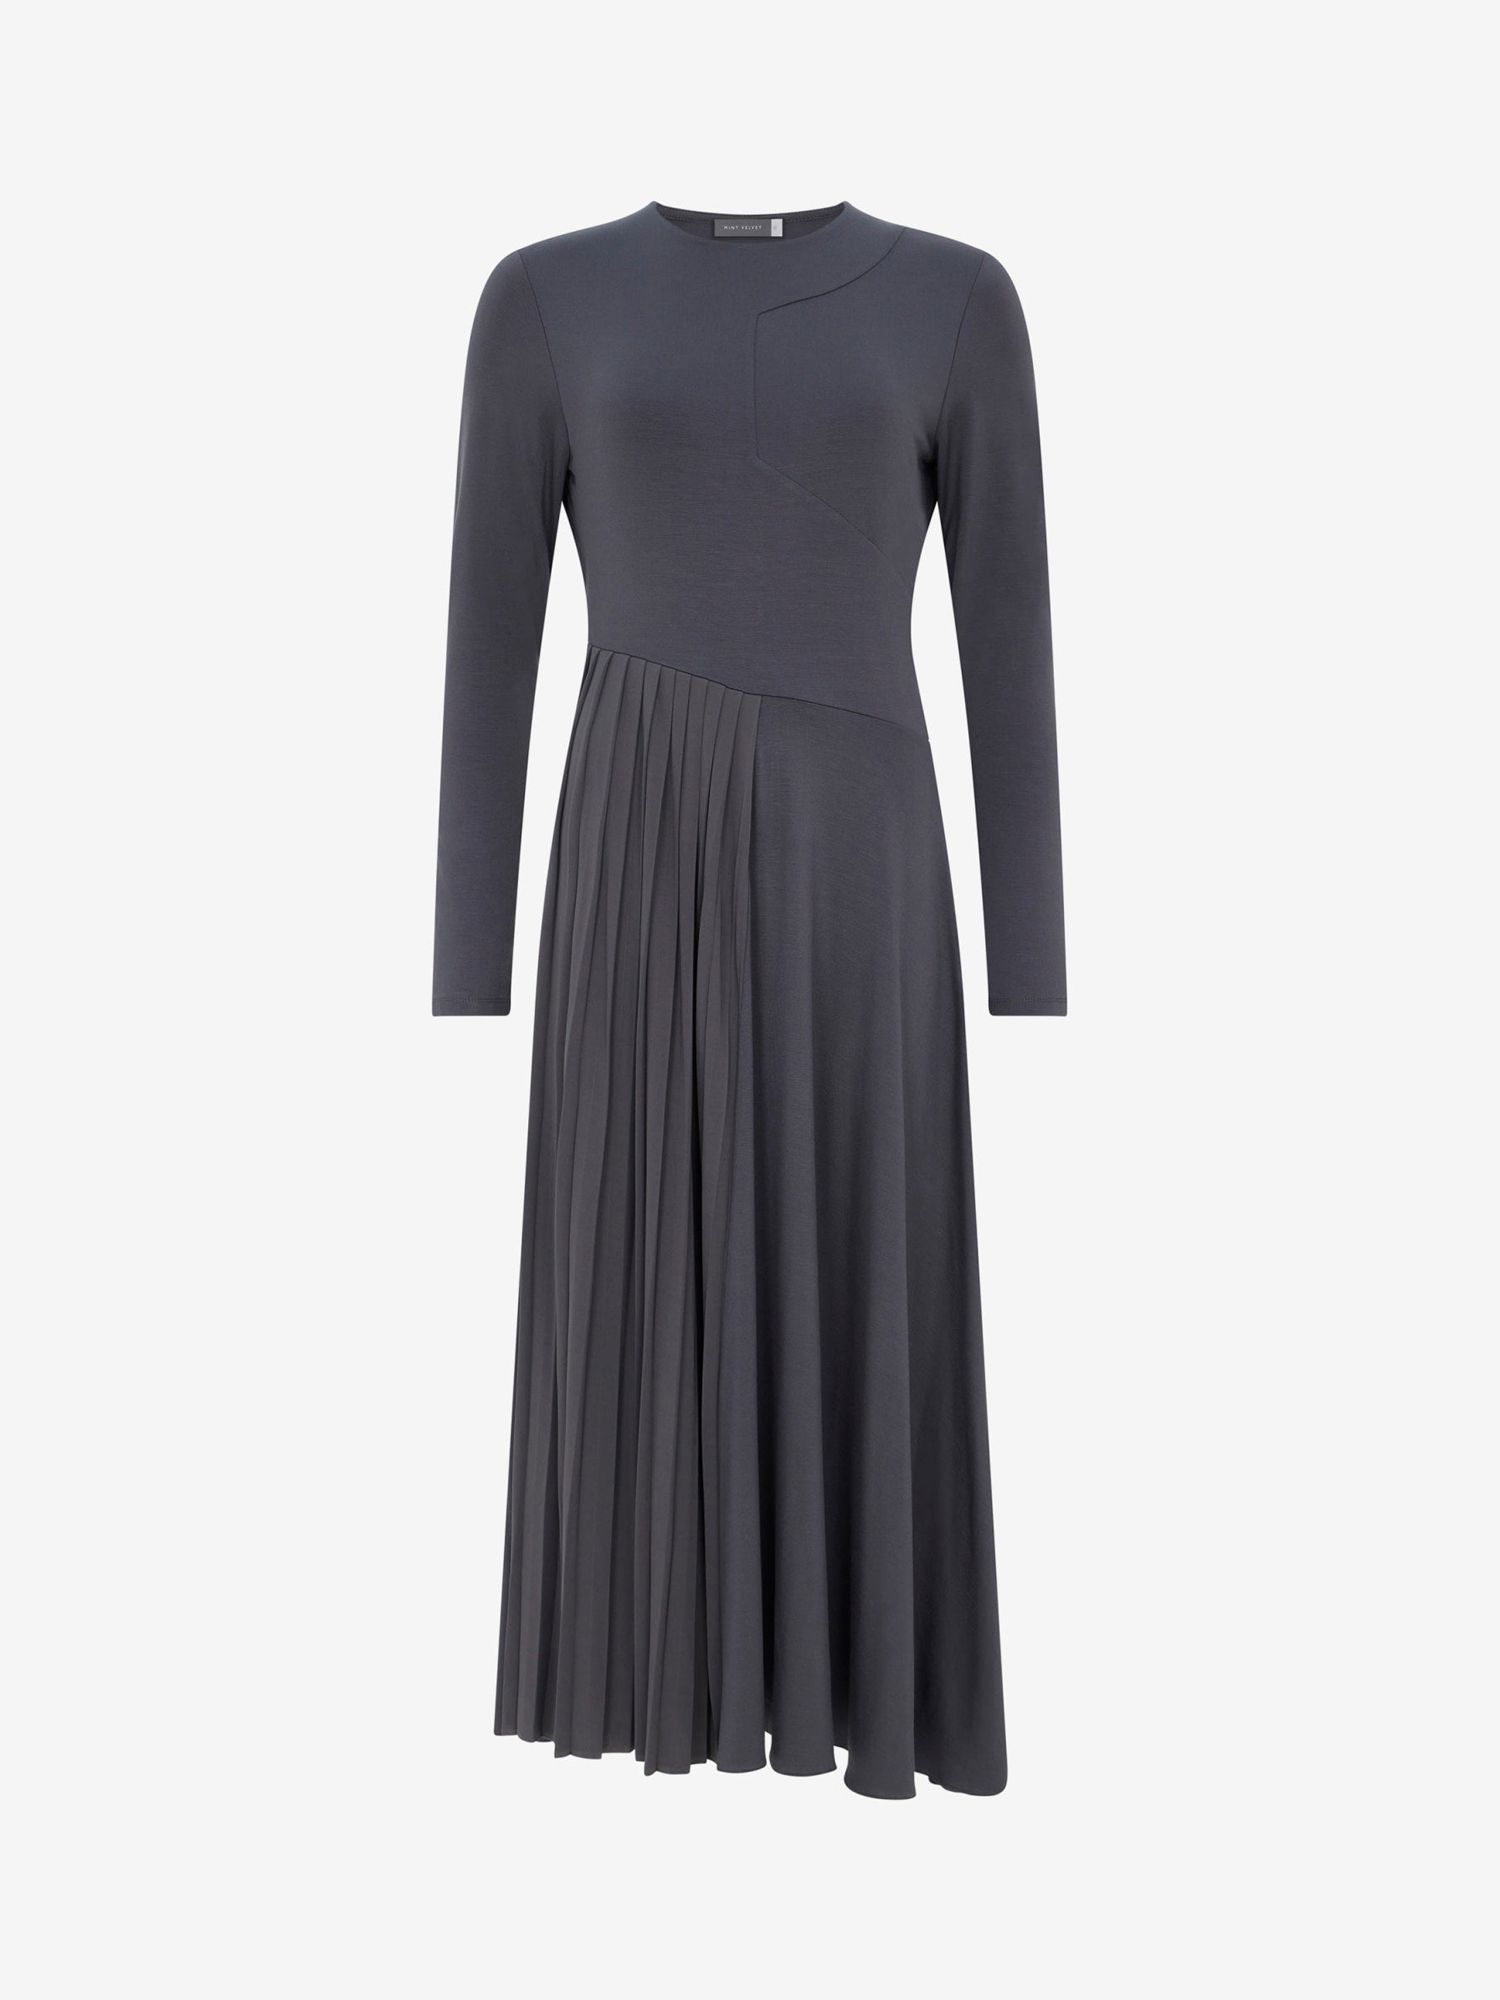 Mint Velvet Pleated Dress, Size 8